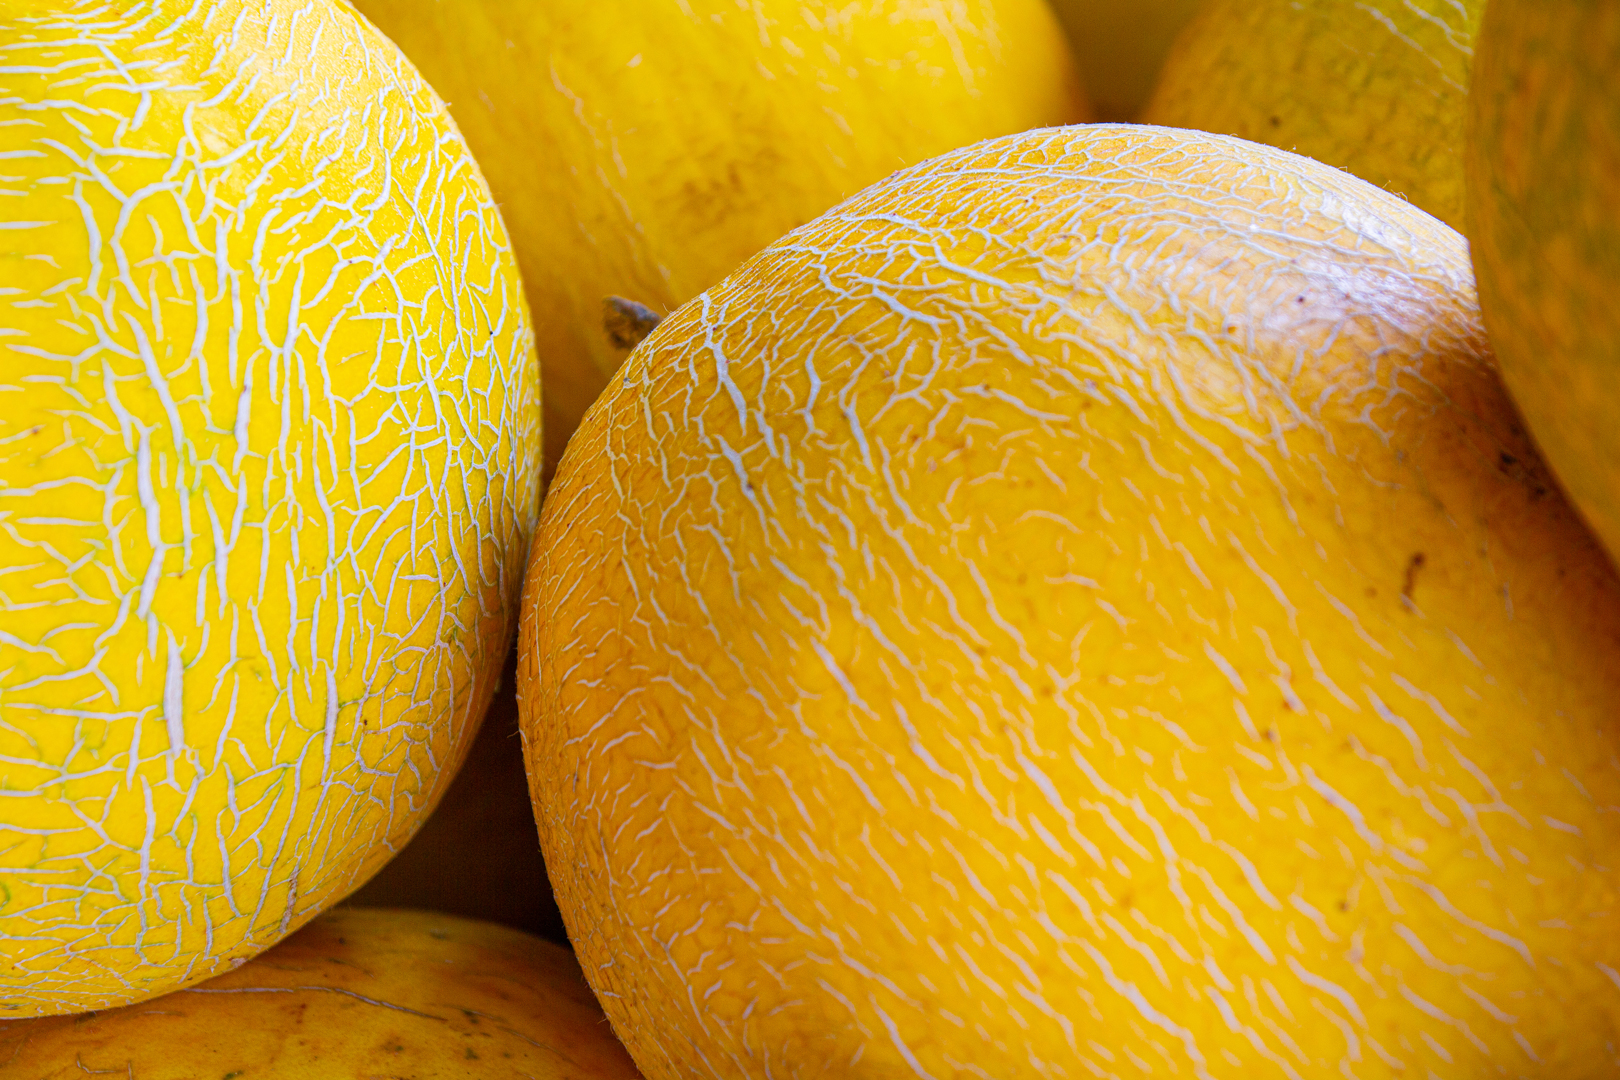 Uprawa i nawadnianie melonów: kompleksowy przewodnik po ekonomicznym rolnictwie